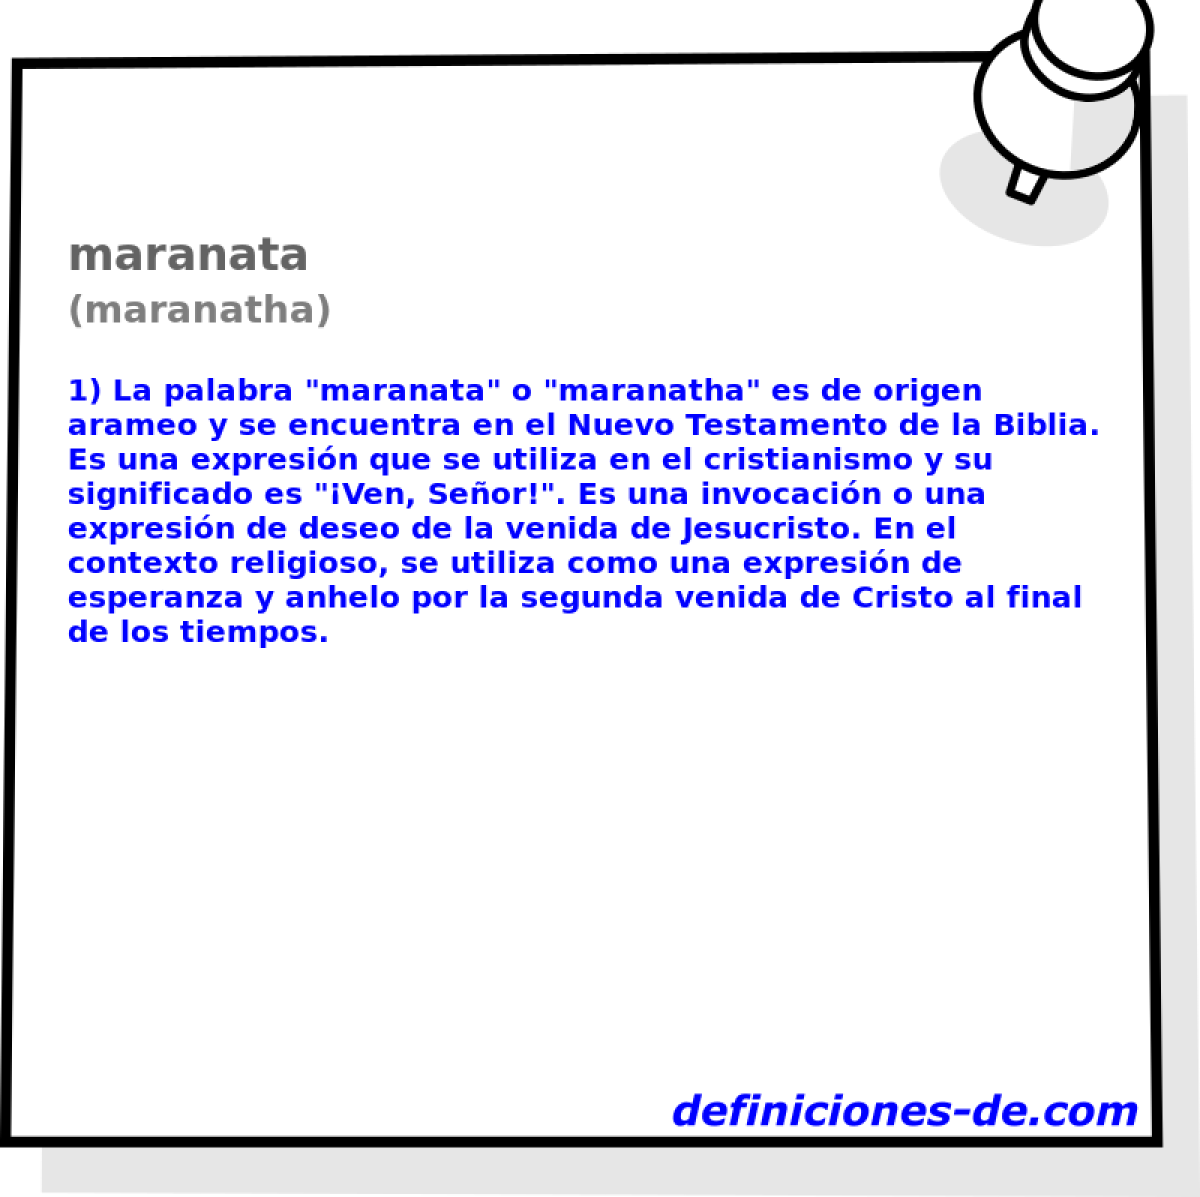 maranata (maranatha)